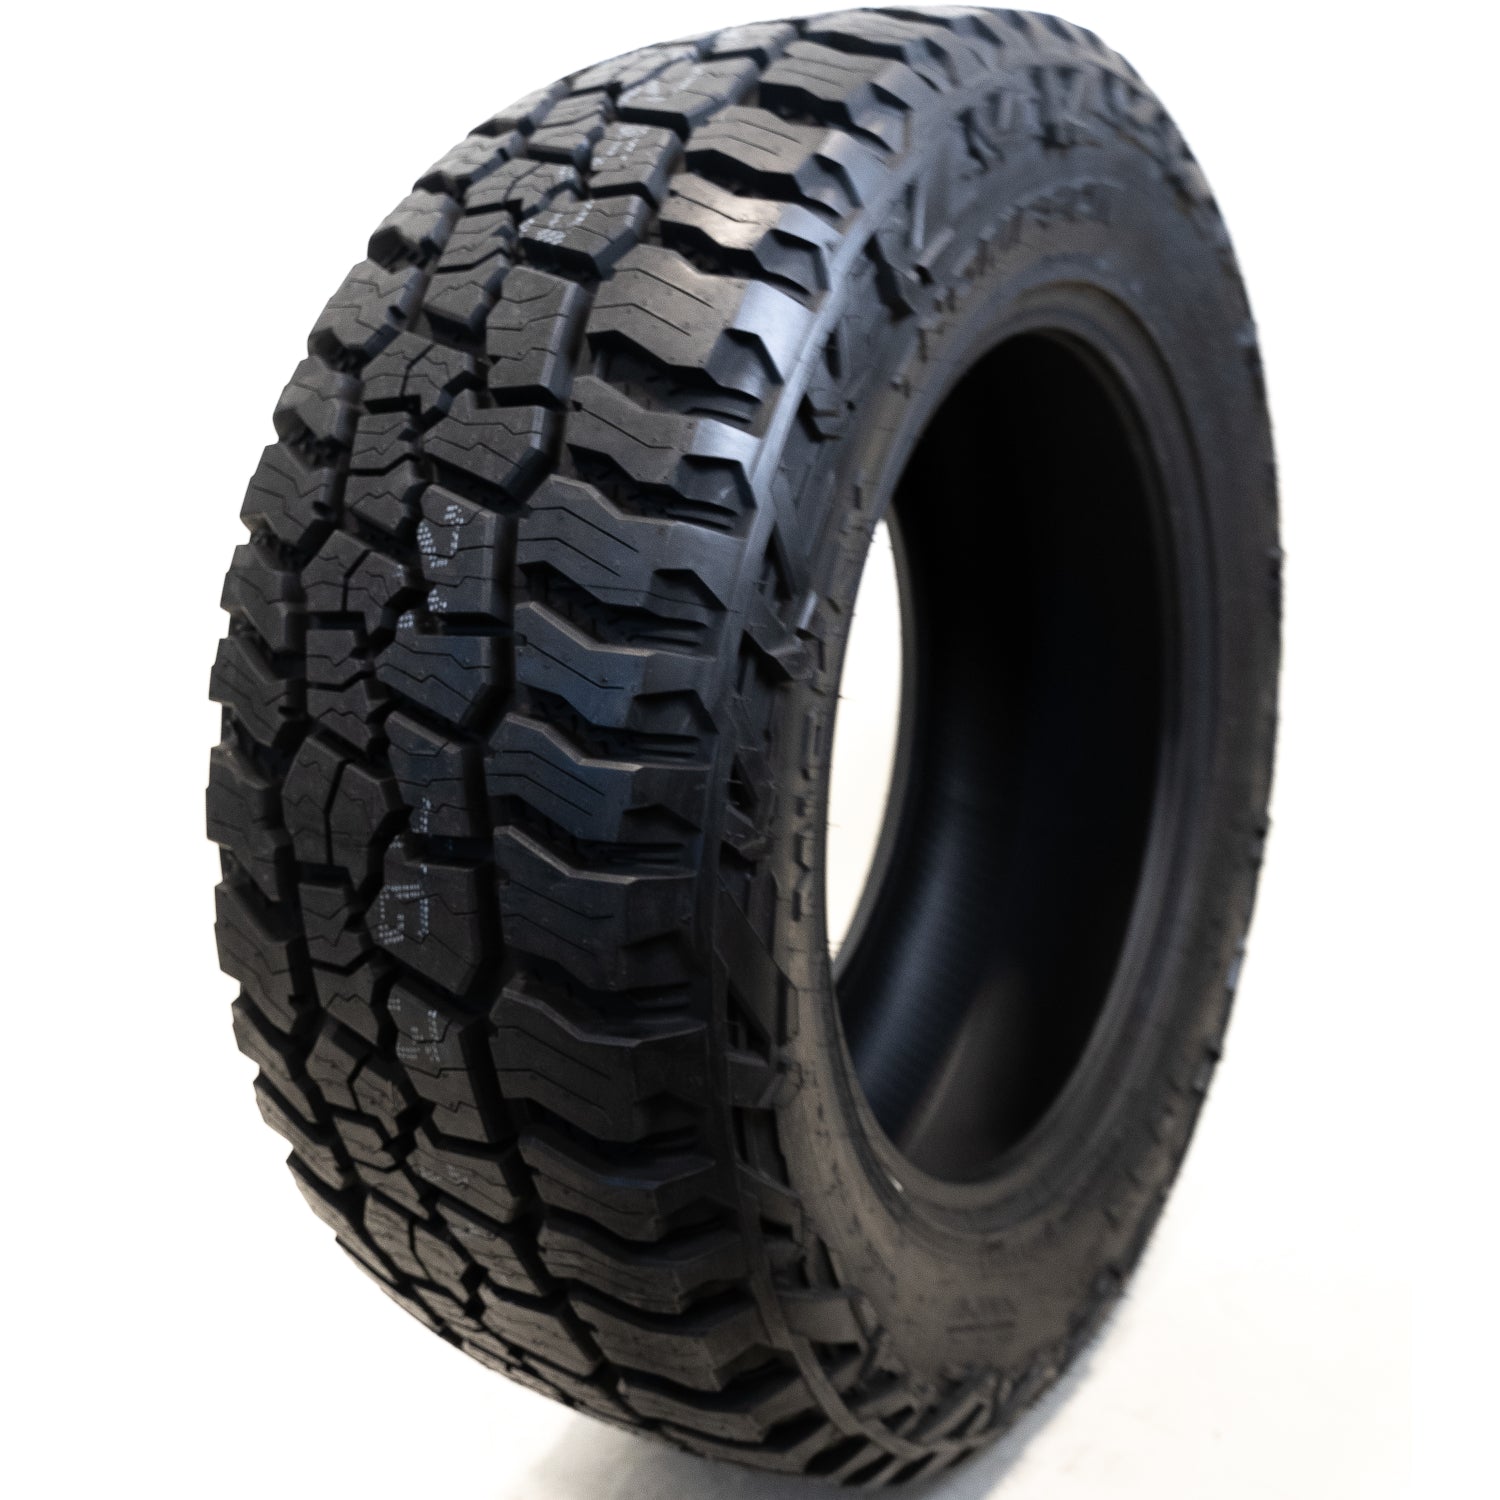 MICKEY THOMPSON BAJA BOSS A/T 275/60R20 (33.4X10.8R 20) Tires